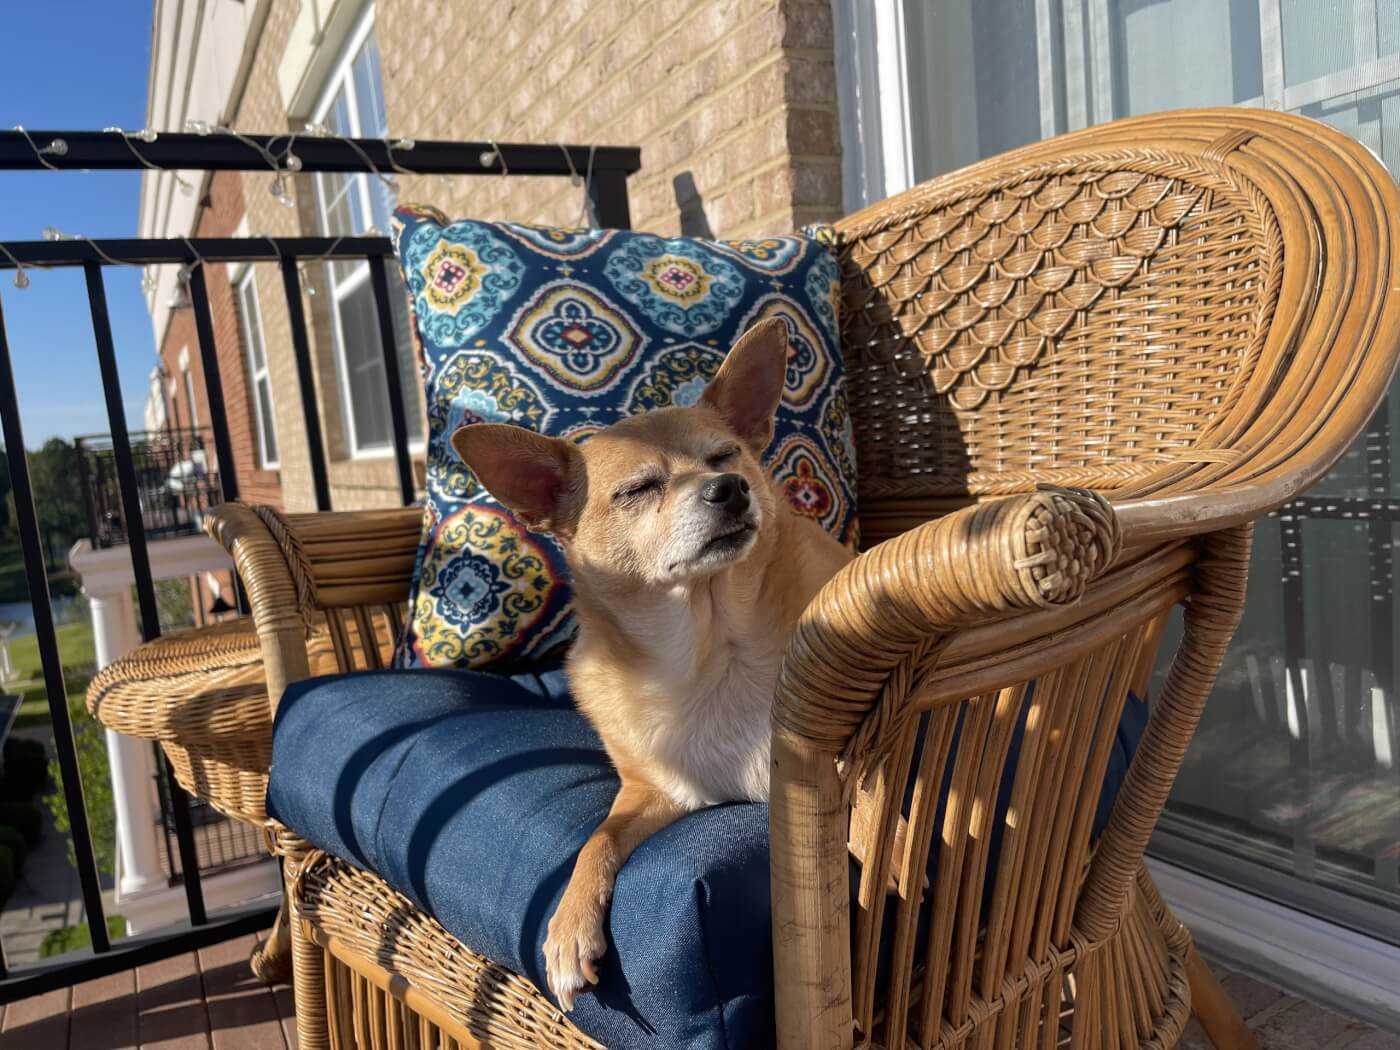 Buster sunbathing on a wicker chair